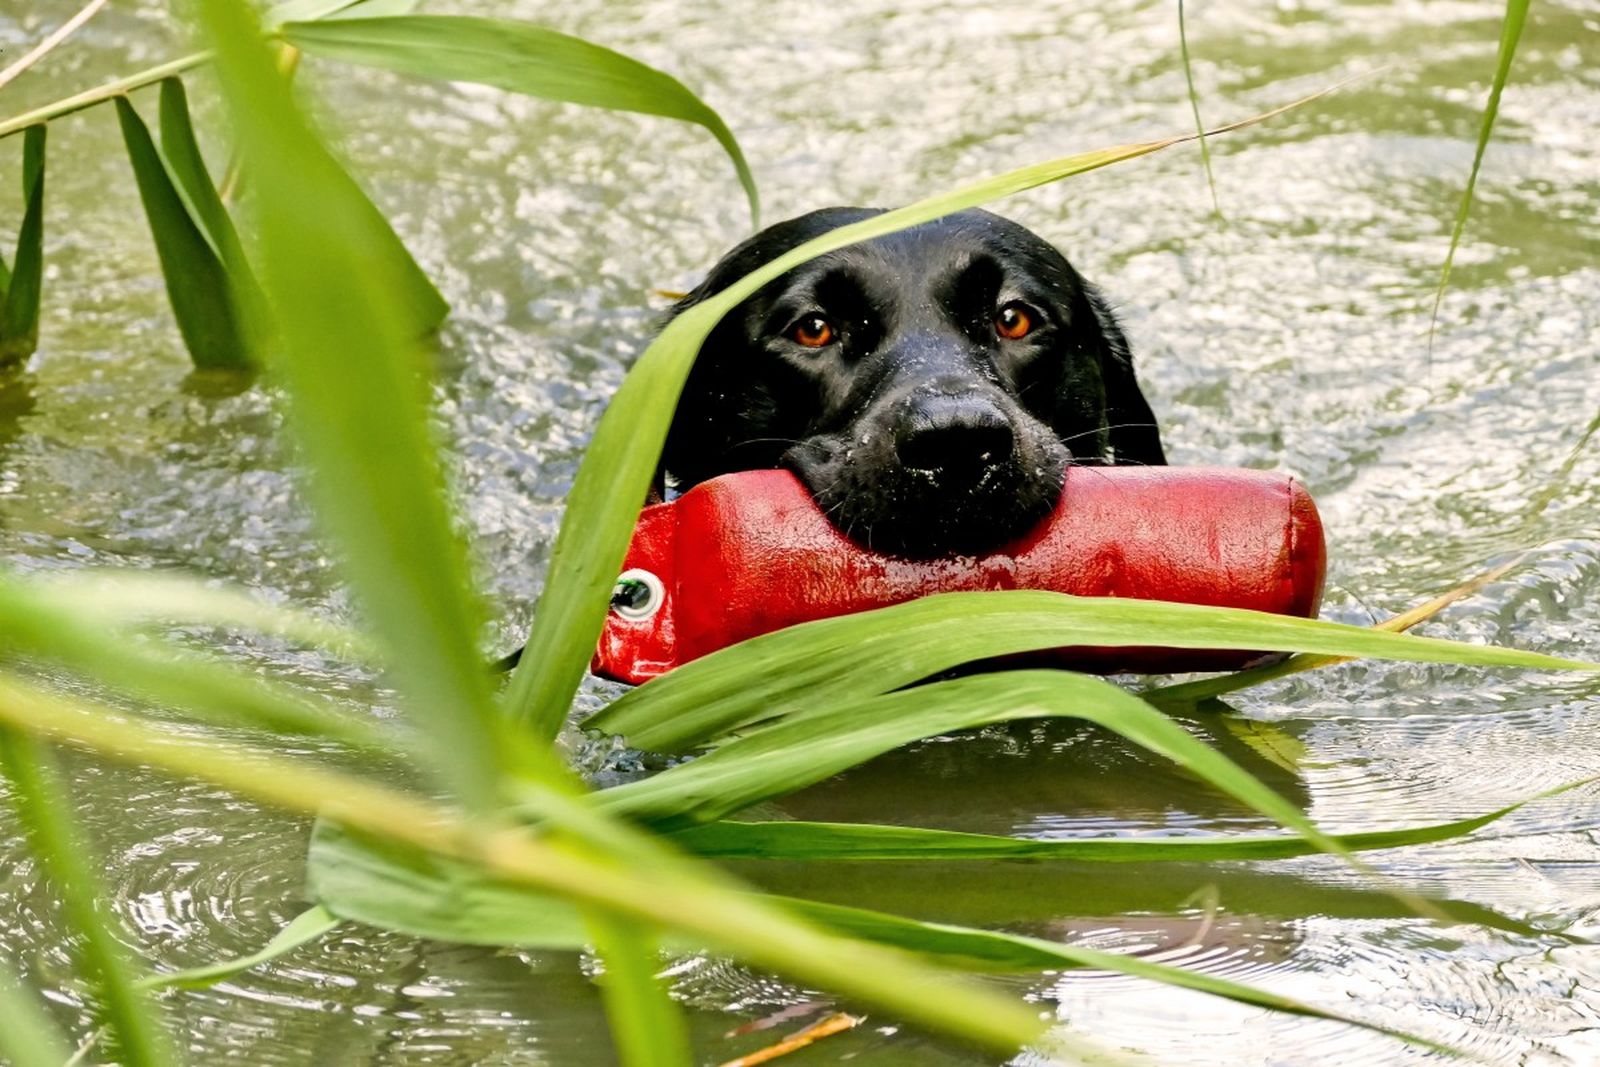 Ein schwarzer Hund der Rasse Labrador Retriever schwimmt mit einem roten Trainingsdummy im Maul durch das schilfbewachsene Gewässer in Richtung Betrachter.